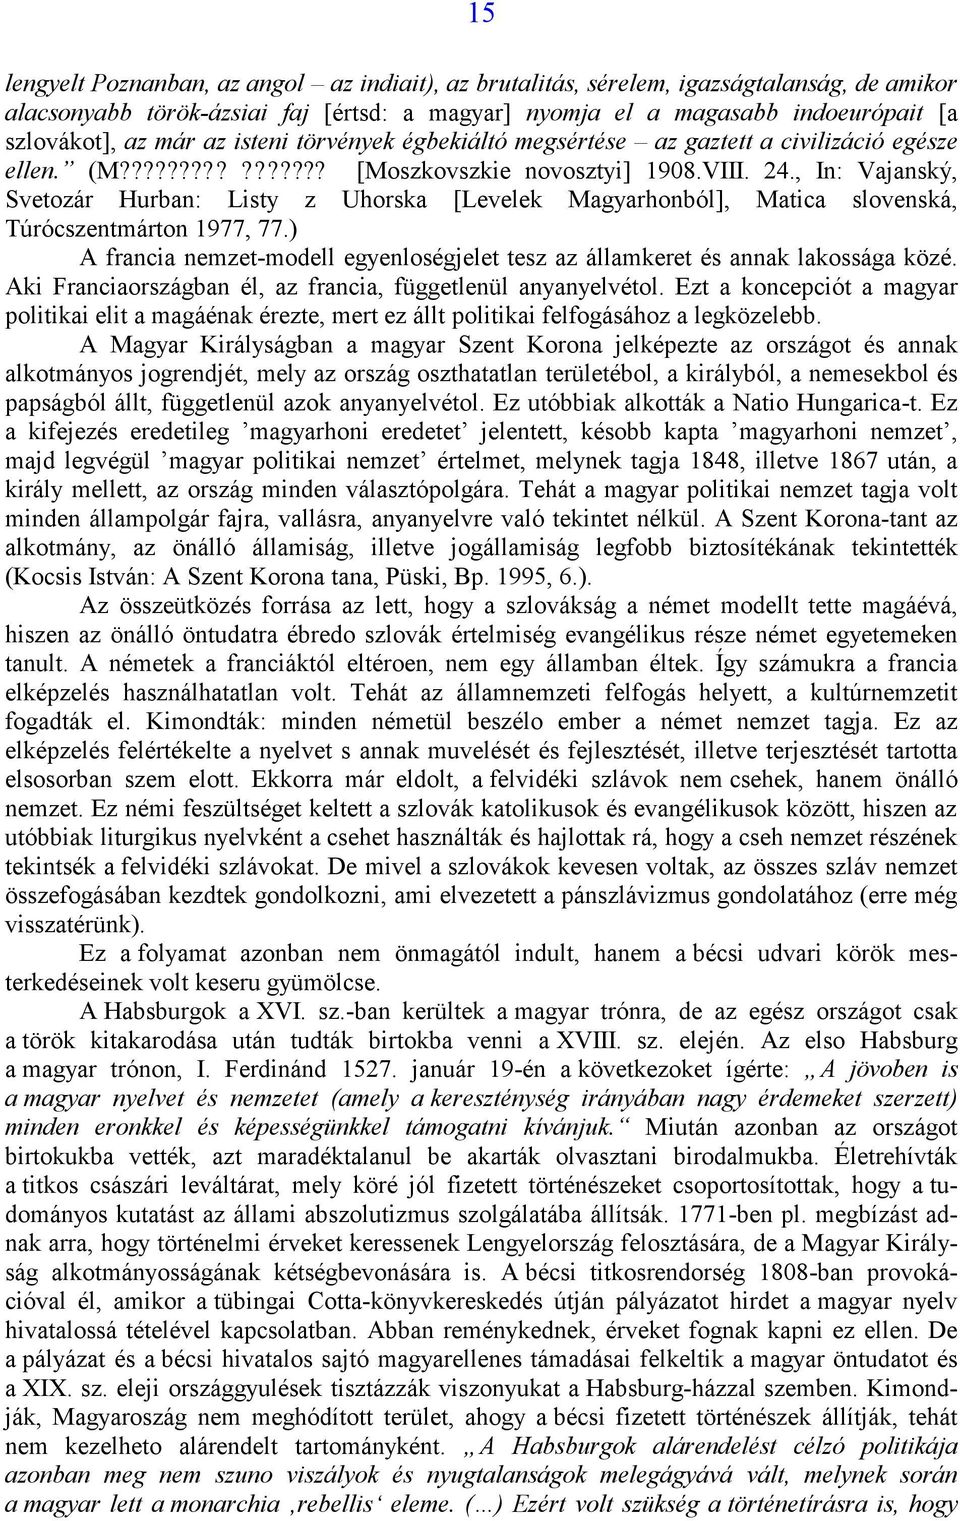 , In: Vajanský, Svetozár Hurban: Listy z Uhorska [Levelek Magyarhonból], Matica slovenská, Túrócszentmárton 1977, 77.